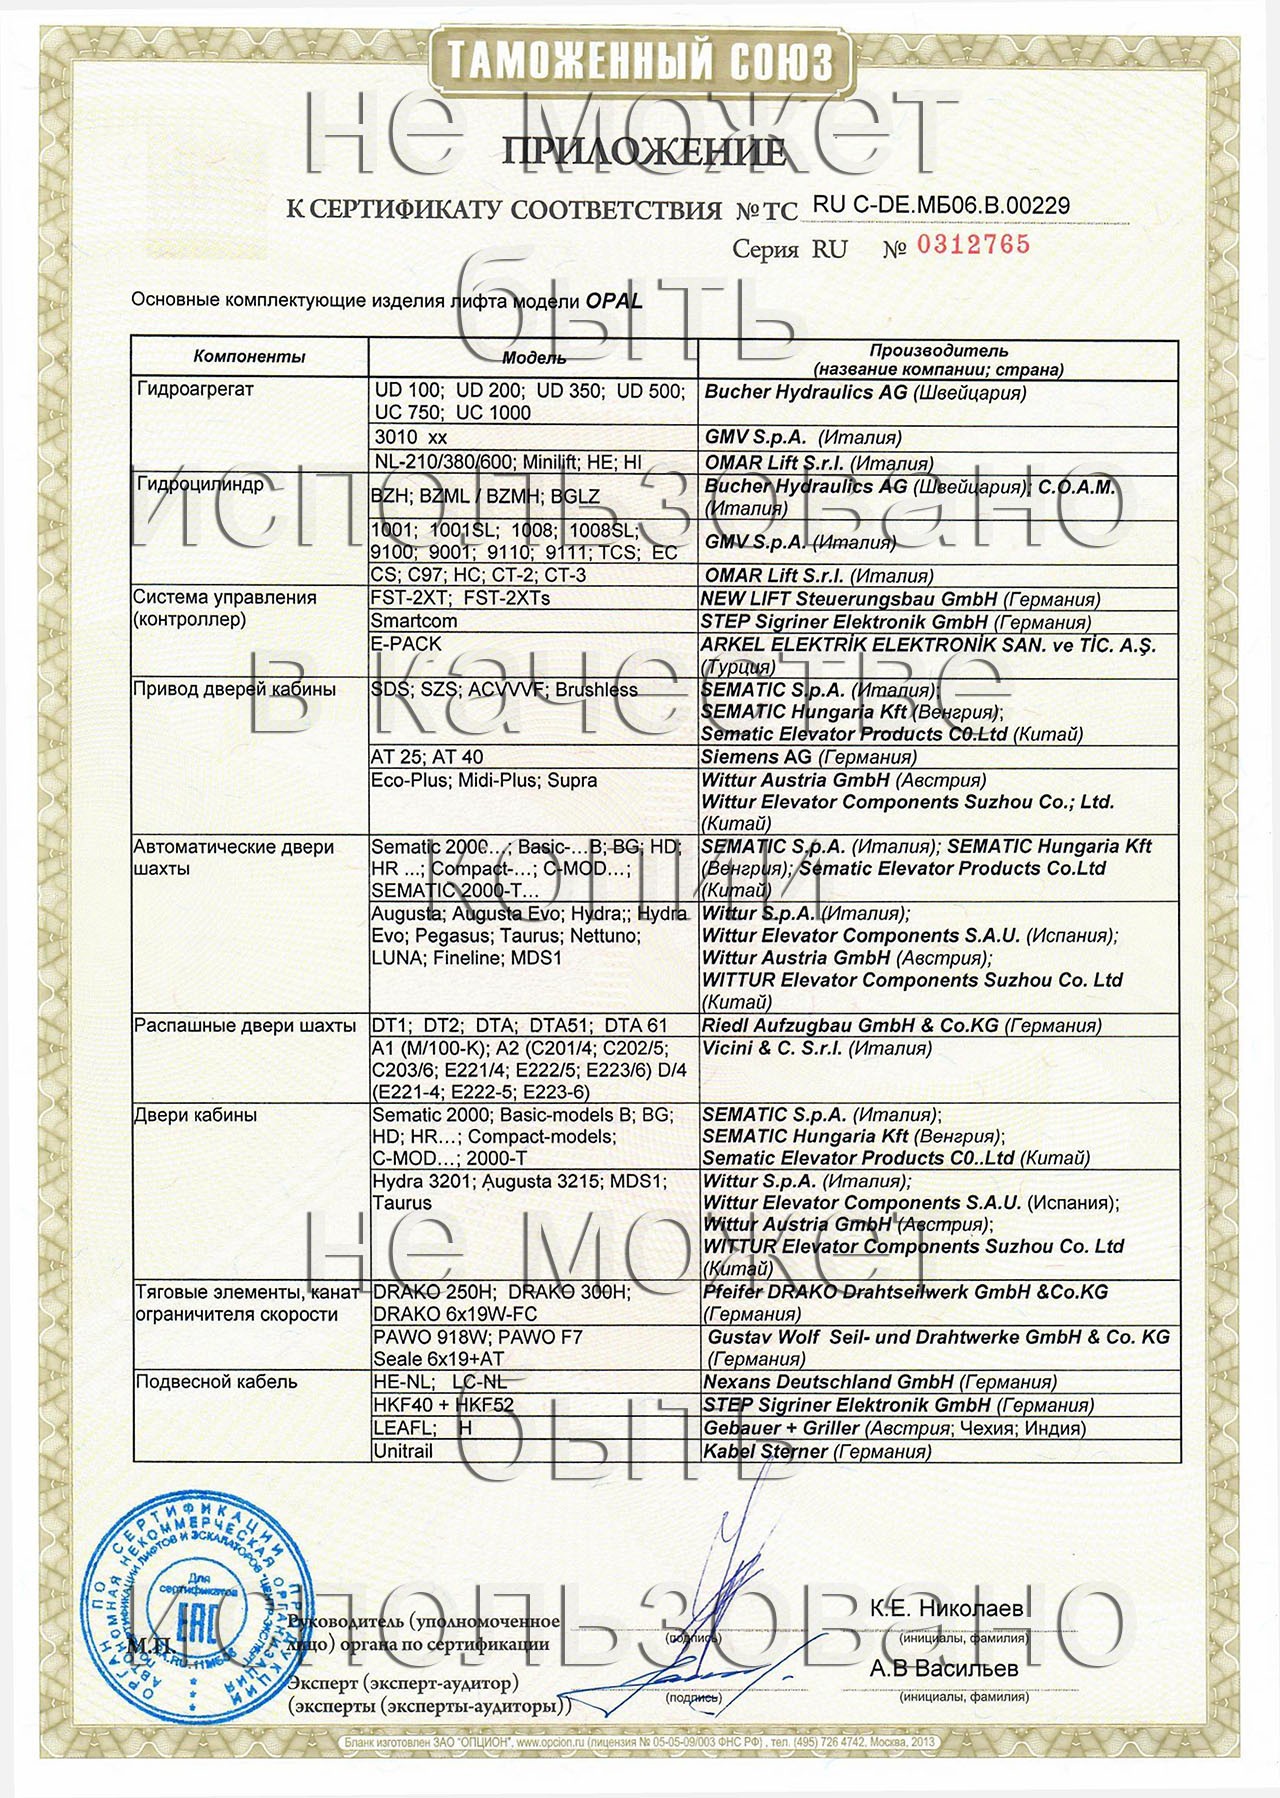 сертификат ТС RU С-DE.МБ06.В.00229 на лифты грузопассажирские